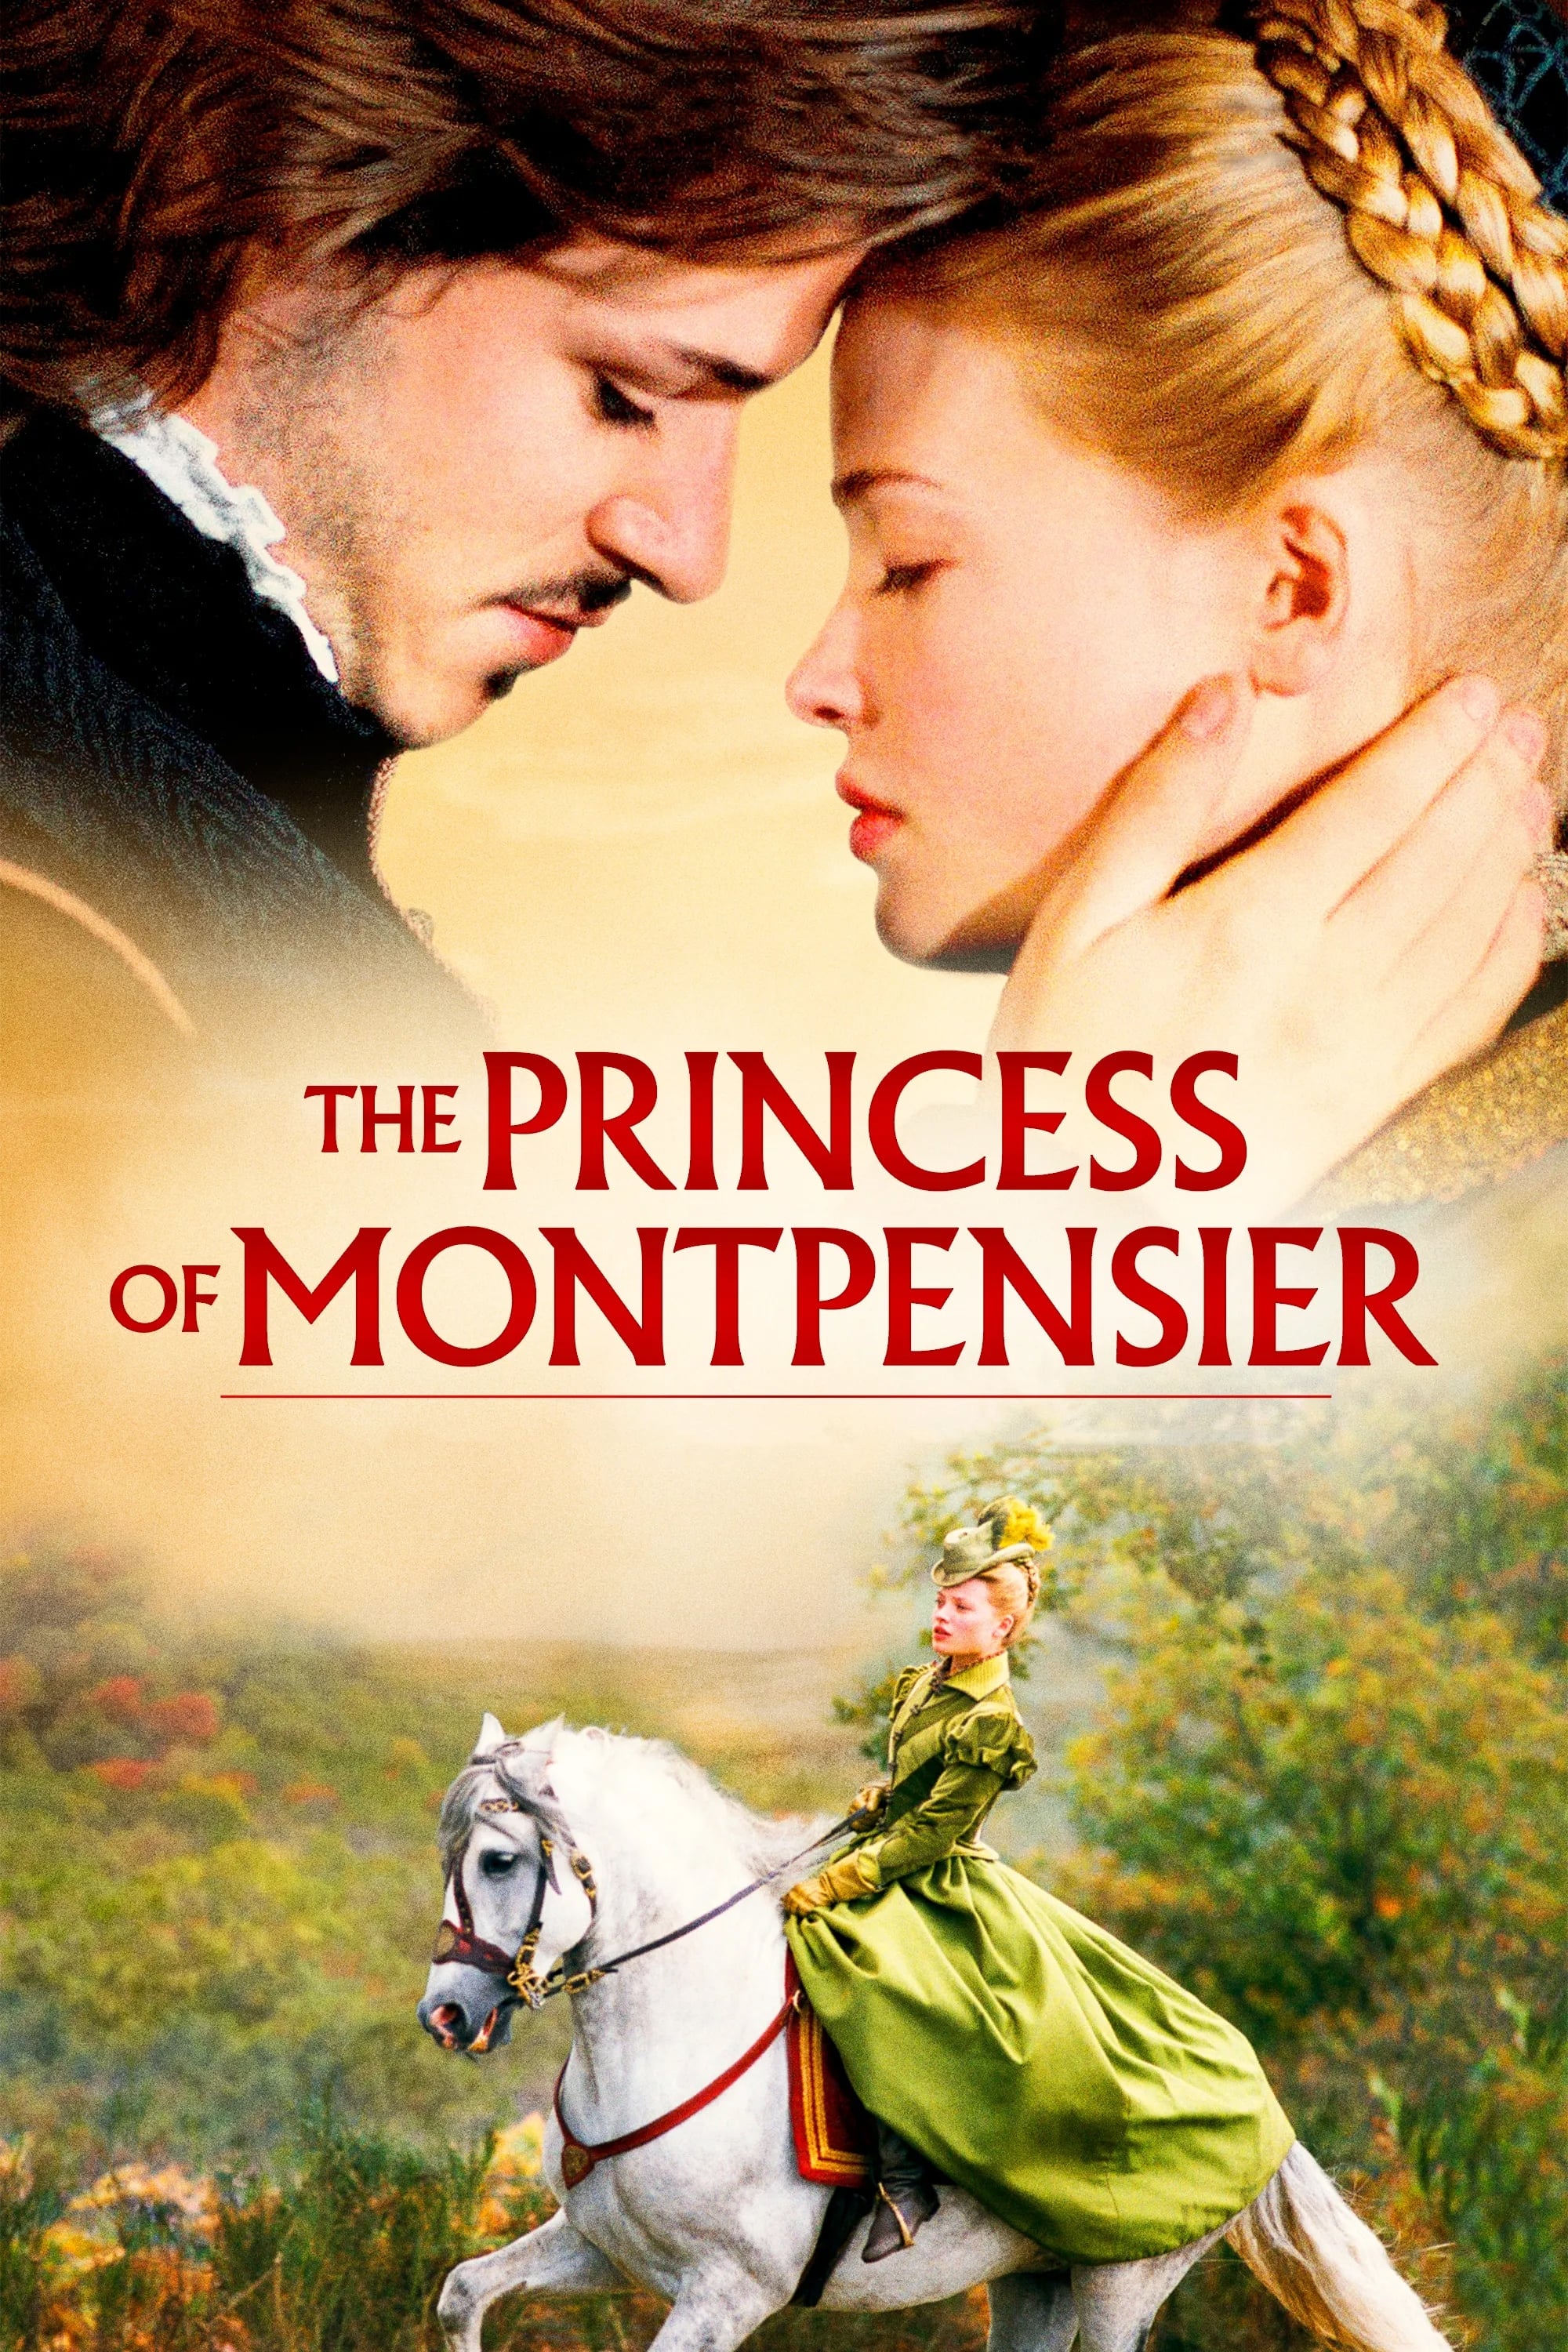 A Princesa de Montpensier (2010)